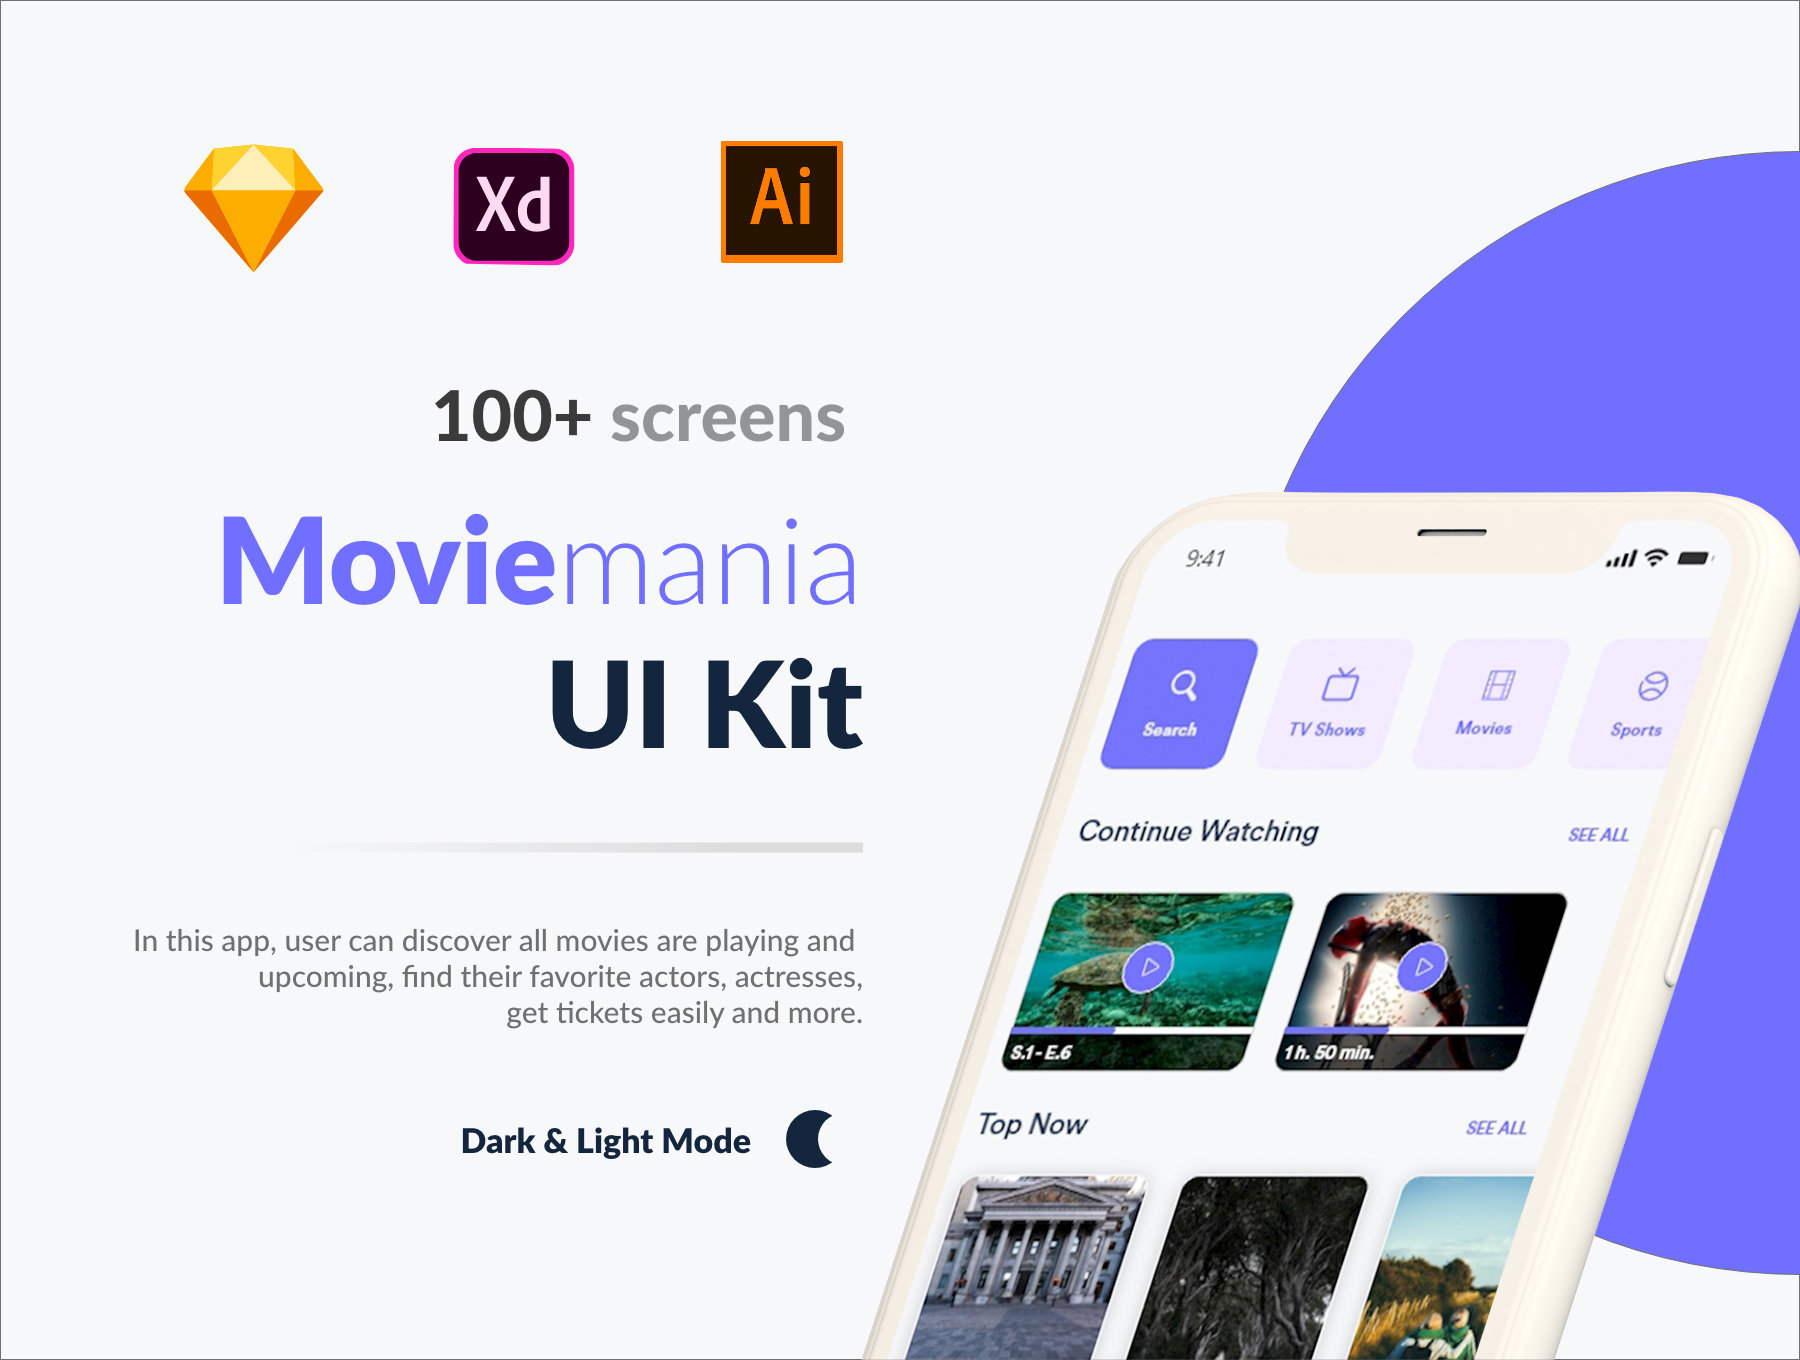 Moviemania App UI Kit 电影狂人应用程序UI套件-UI/UX-到位啦UI